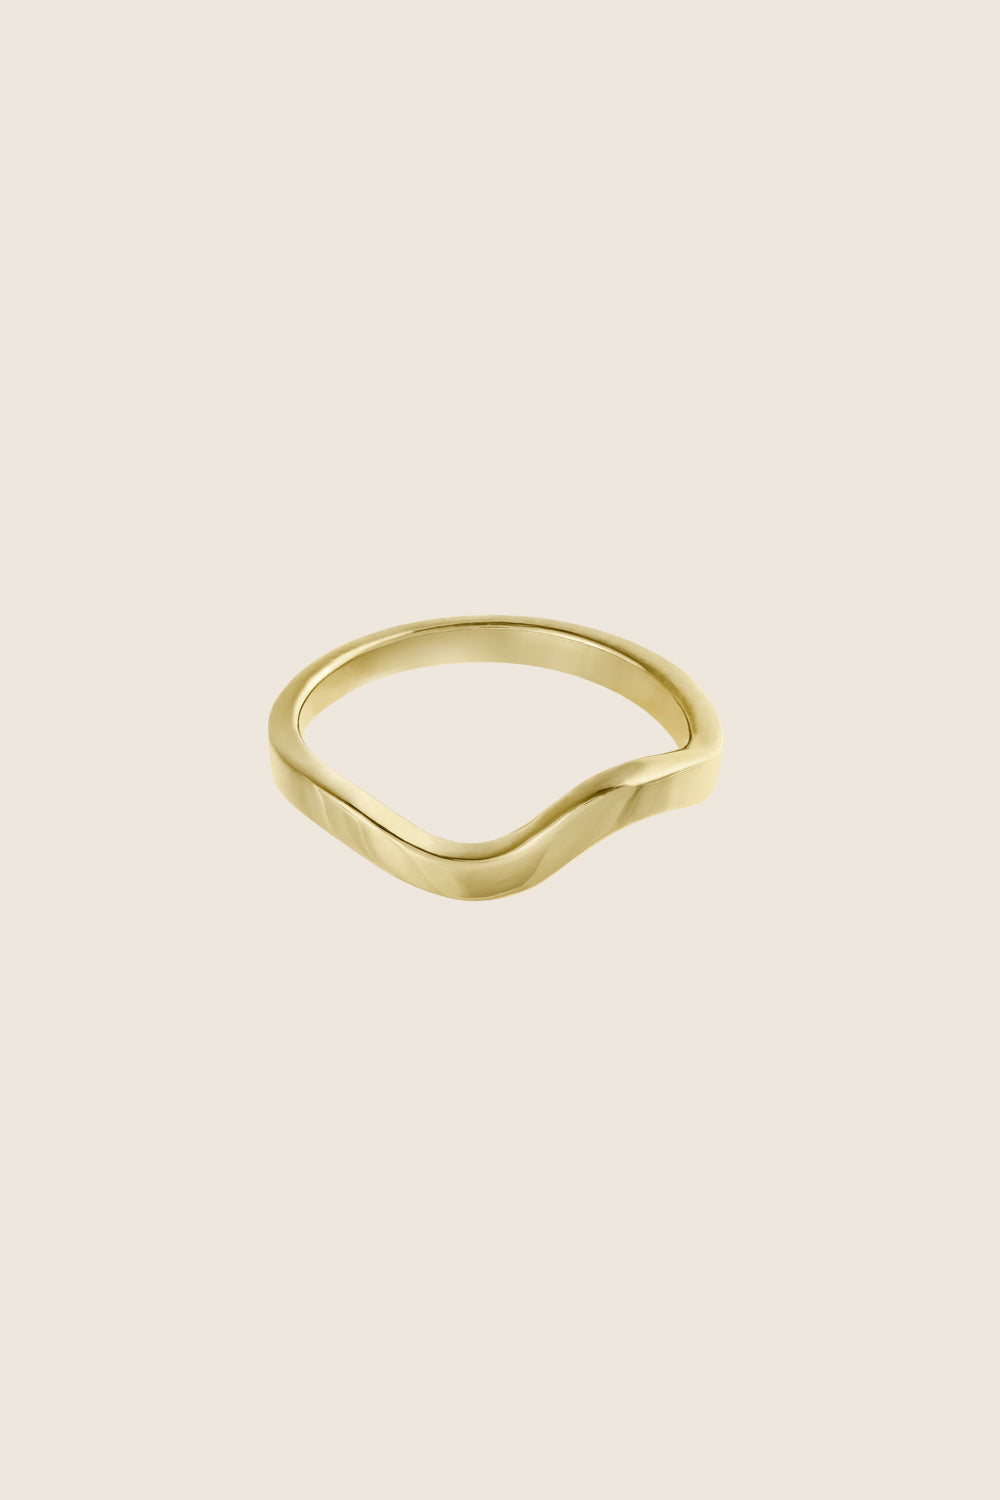 minimalistyczna obrączka fala złoto 585 RIGO polska biżuteria artystyczna UMIAR